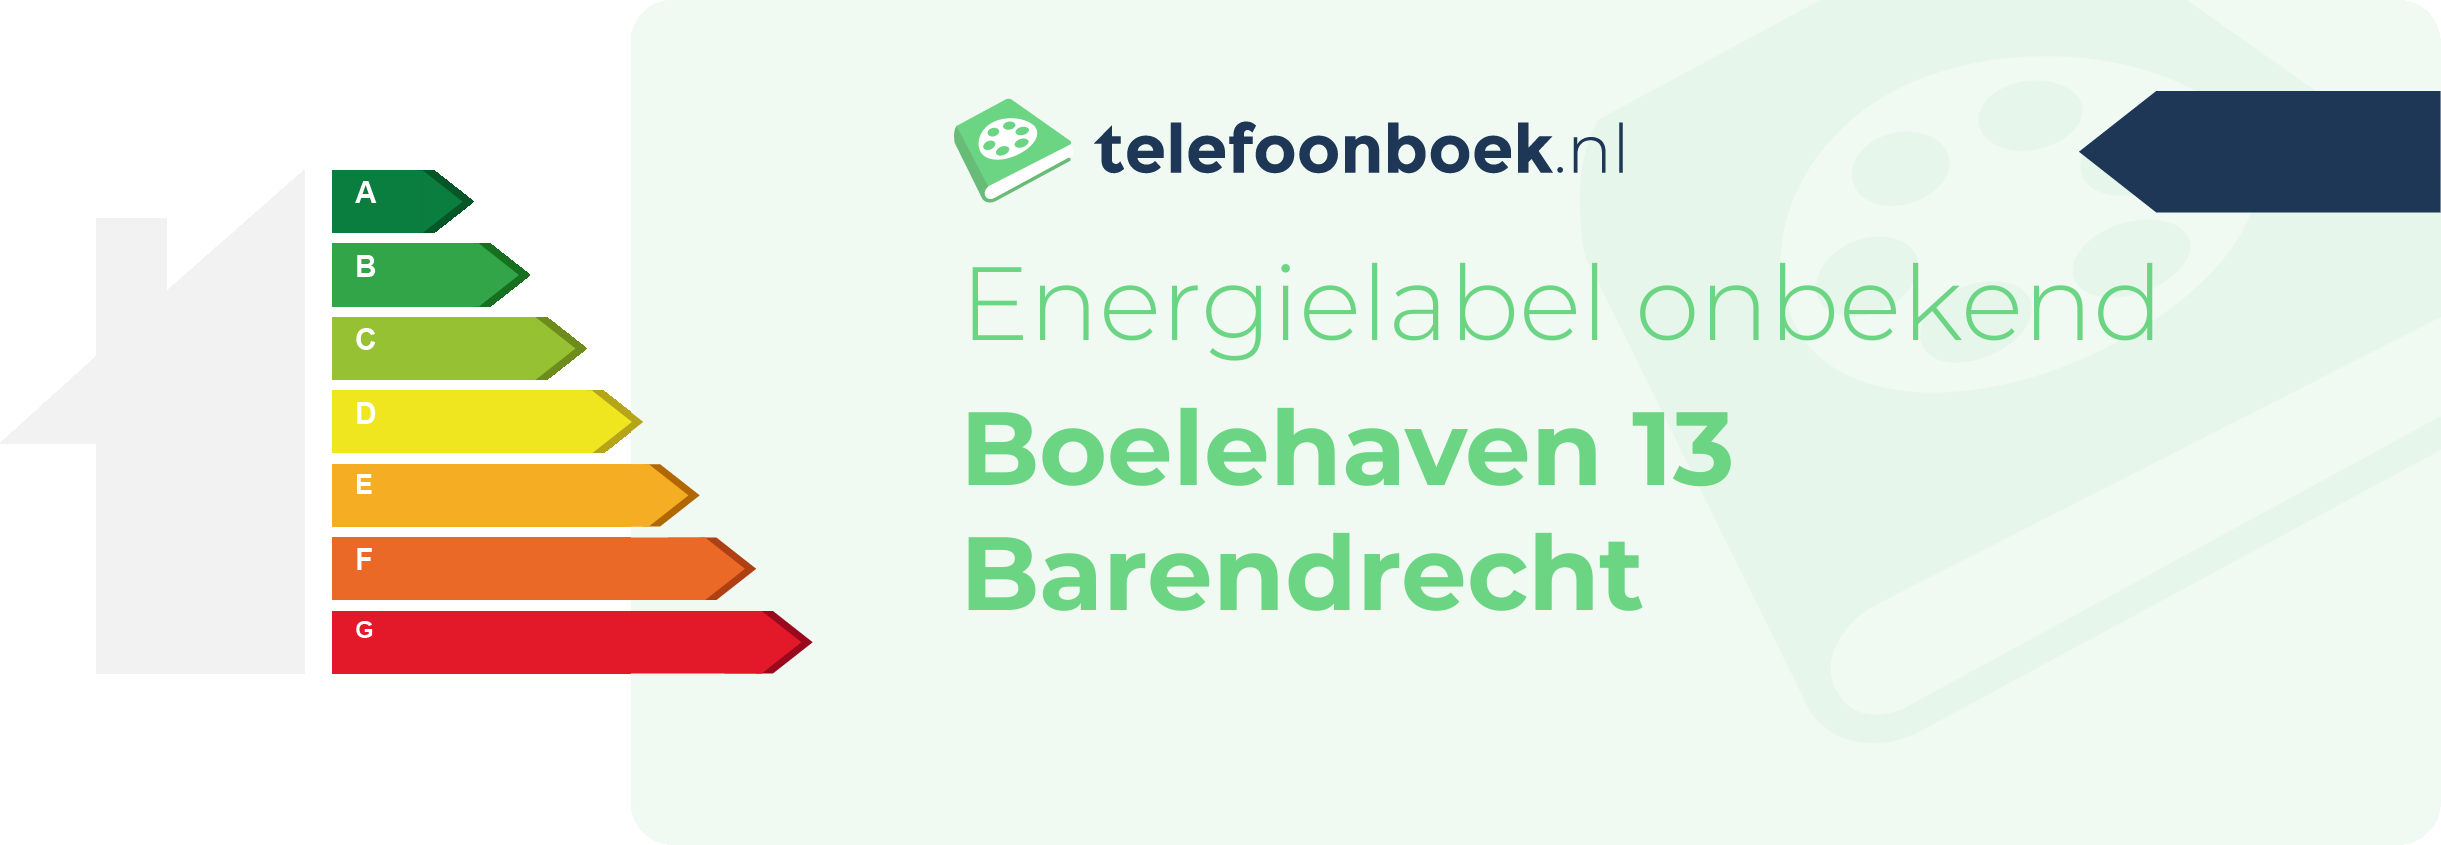 Energielabel Boelehaven 13 Barendrecht